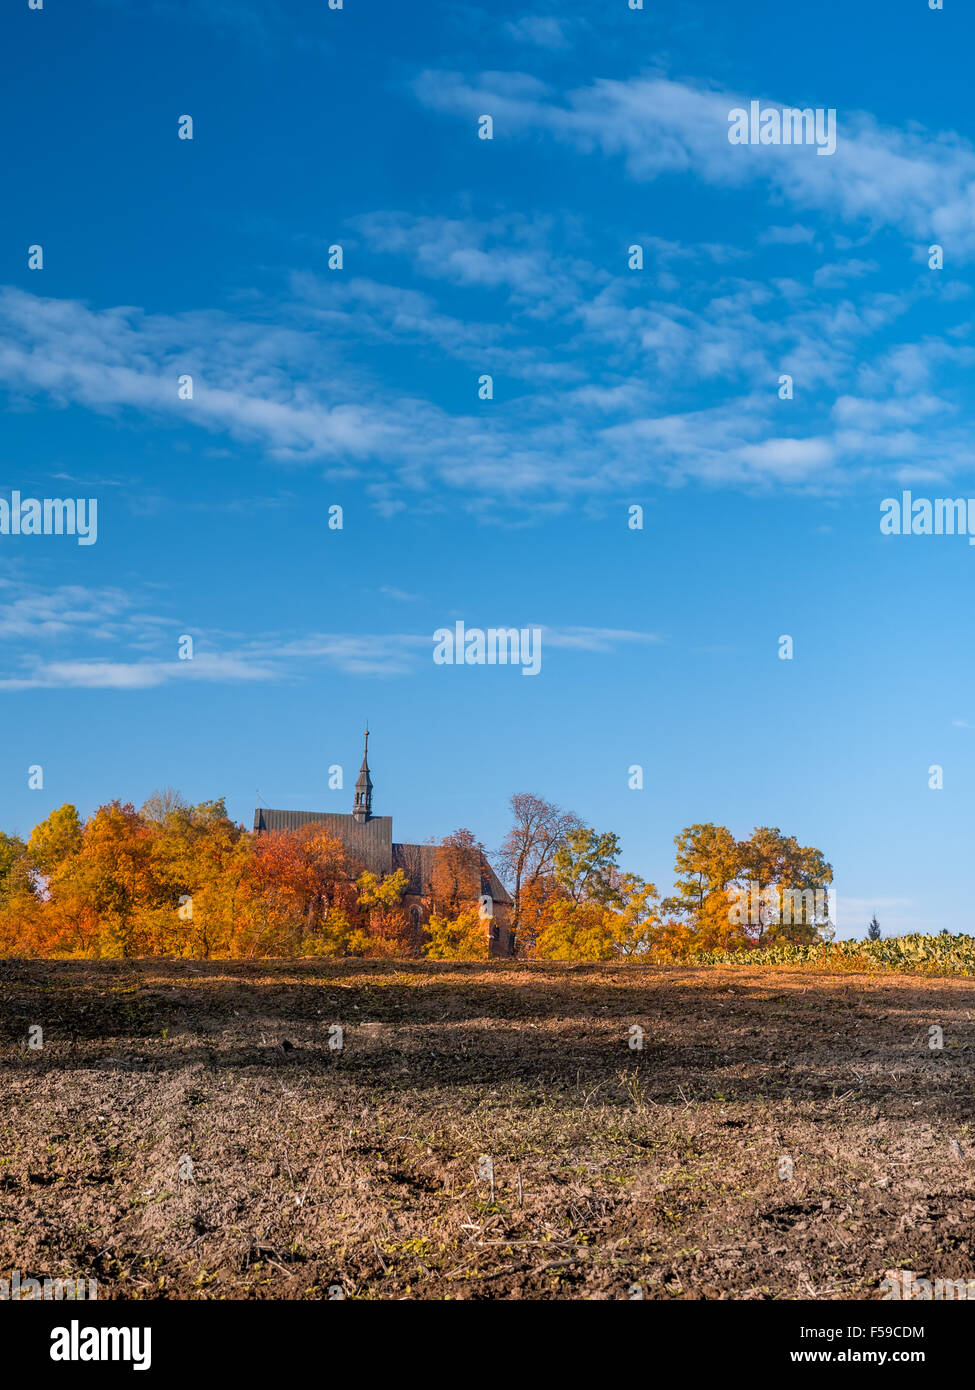 Campagne Église vieille-catholique, entouré d'arbres en couleurs d'automne Banque D'Images